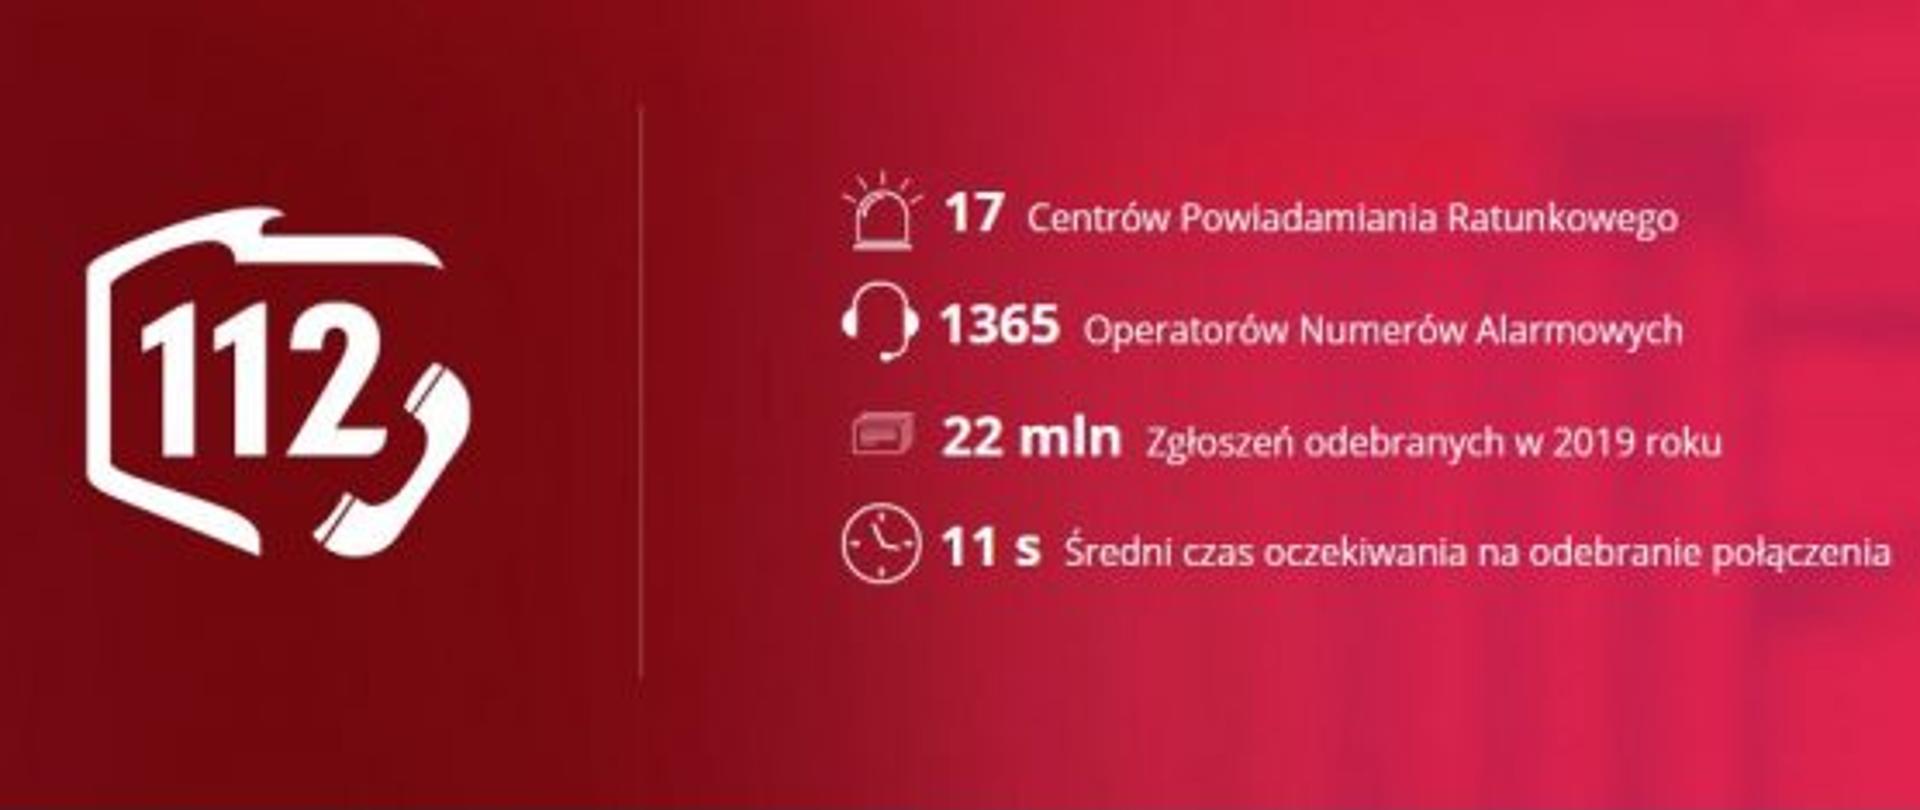 Grafika promocyjna numeru 112 informująca, że w Polsce funkcjonuje 17 centrów powiadamiania ratunkowego, w których pracuje 1365 operatorów, którzy obsłużyli 22 miliony zgłoszeń w 2019 roku, a średni czas oczekiwania na odebranie połączenia wynosił 11 sekund.